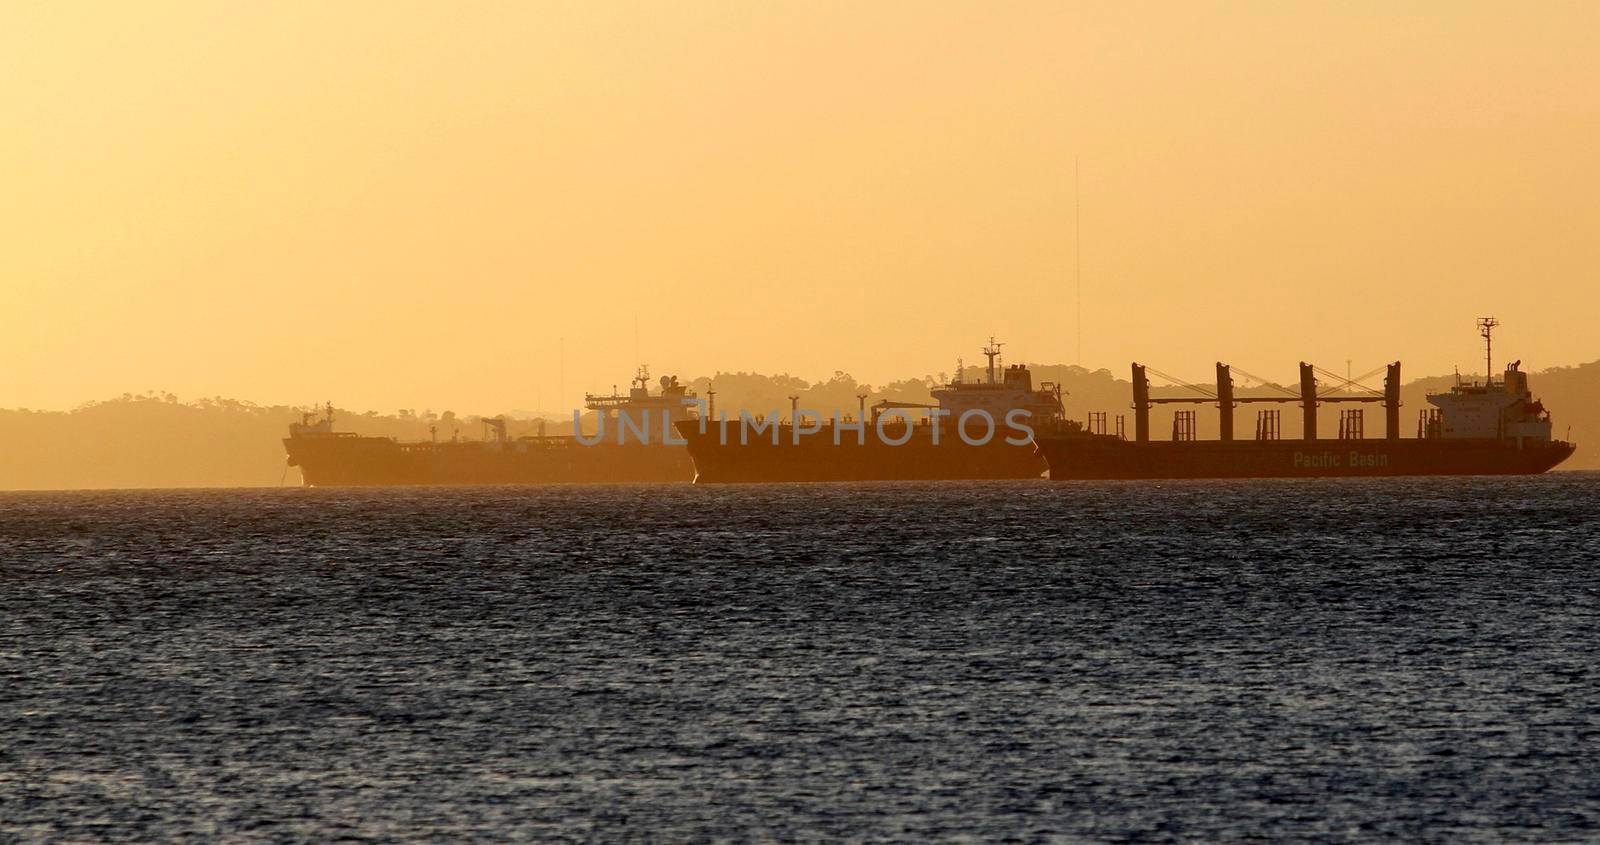 salvador, bahia / brazil - october 1, 2014: cargo ship is seen alongside a sailboat in the waters of Baia de Todos os Santos, in the city of Salvador.